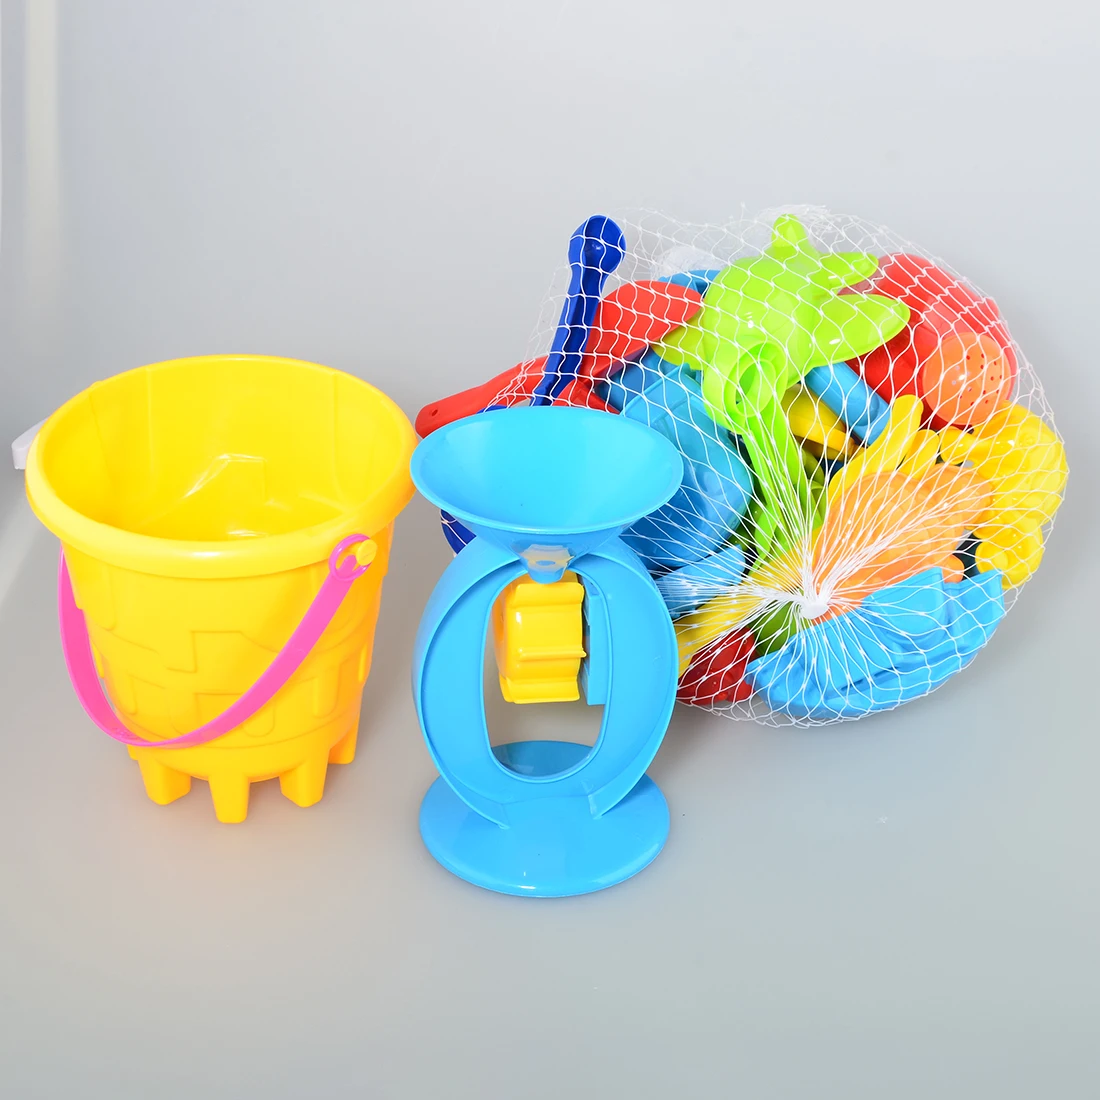 25 шт. набор игрушка для пляжа набор Ковш лопаты грабли для песка колесо Лейка формы игрушки для детей